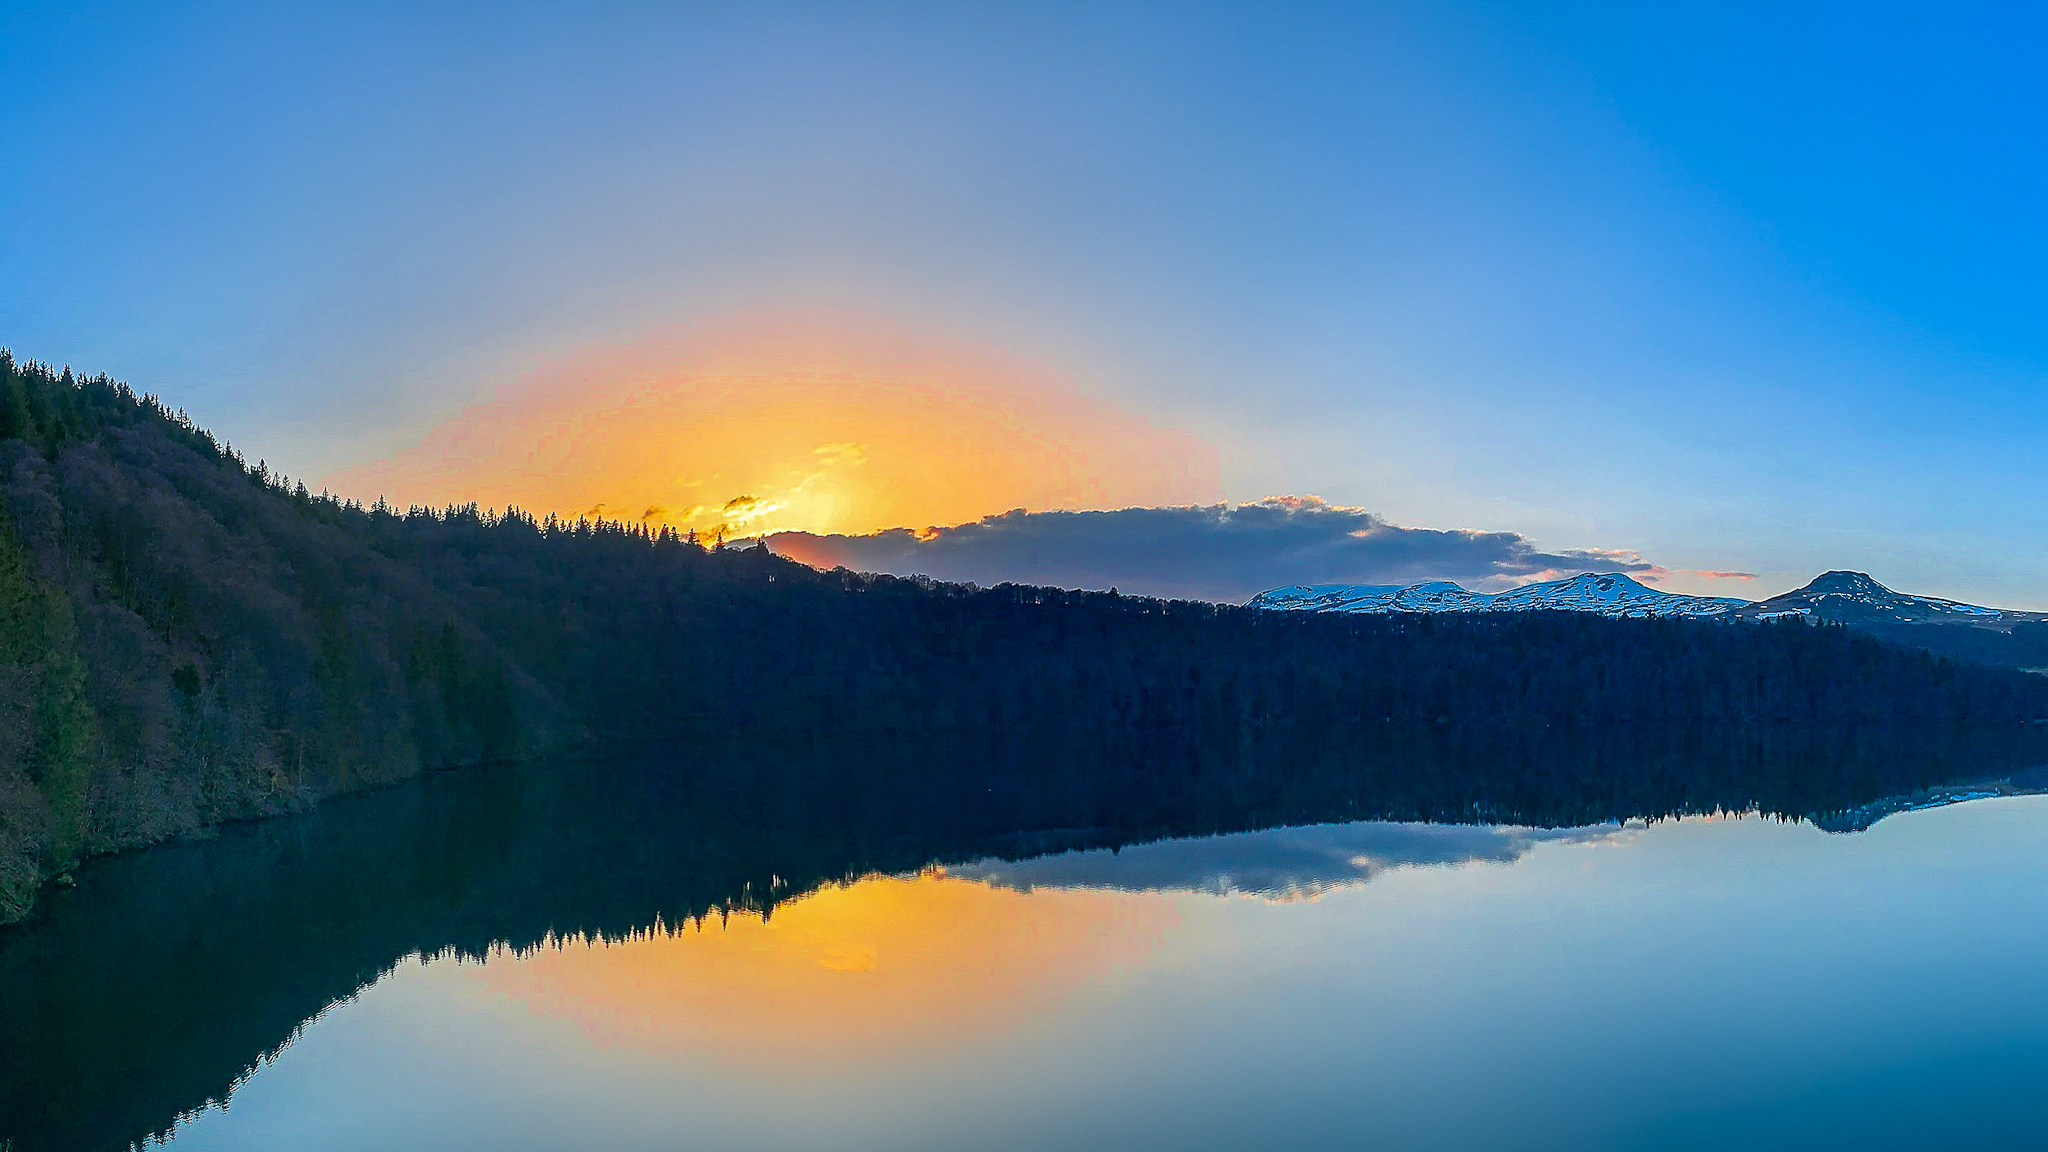 Massif du Sancy, peaceful Lac Pavin at sunset